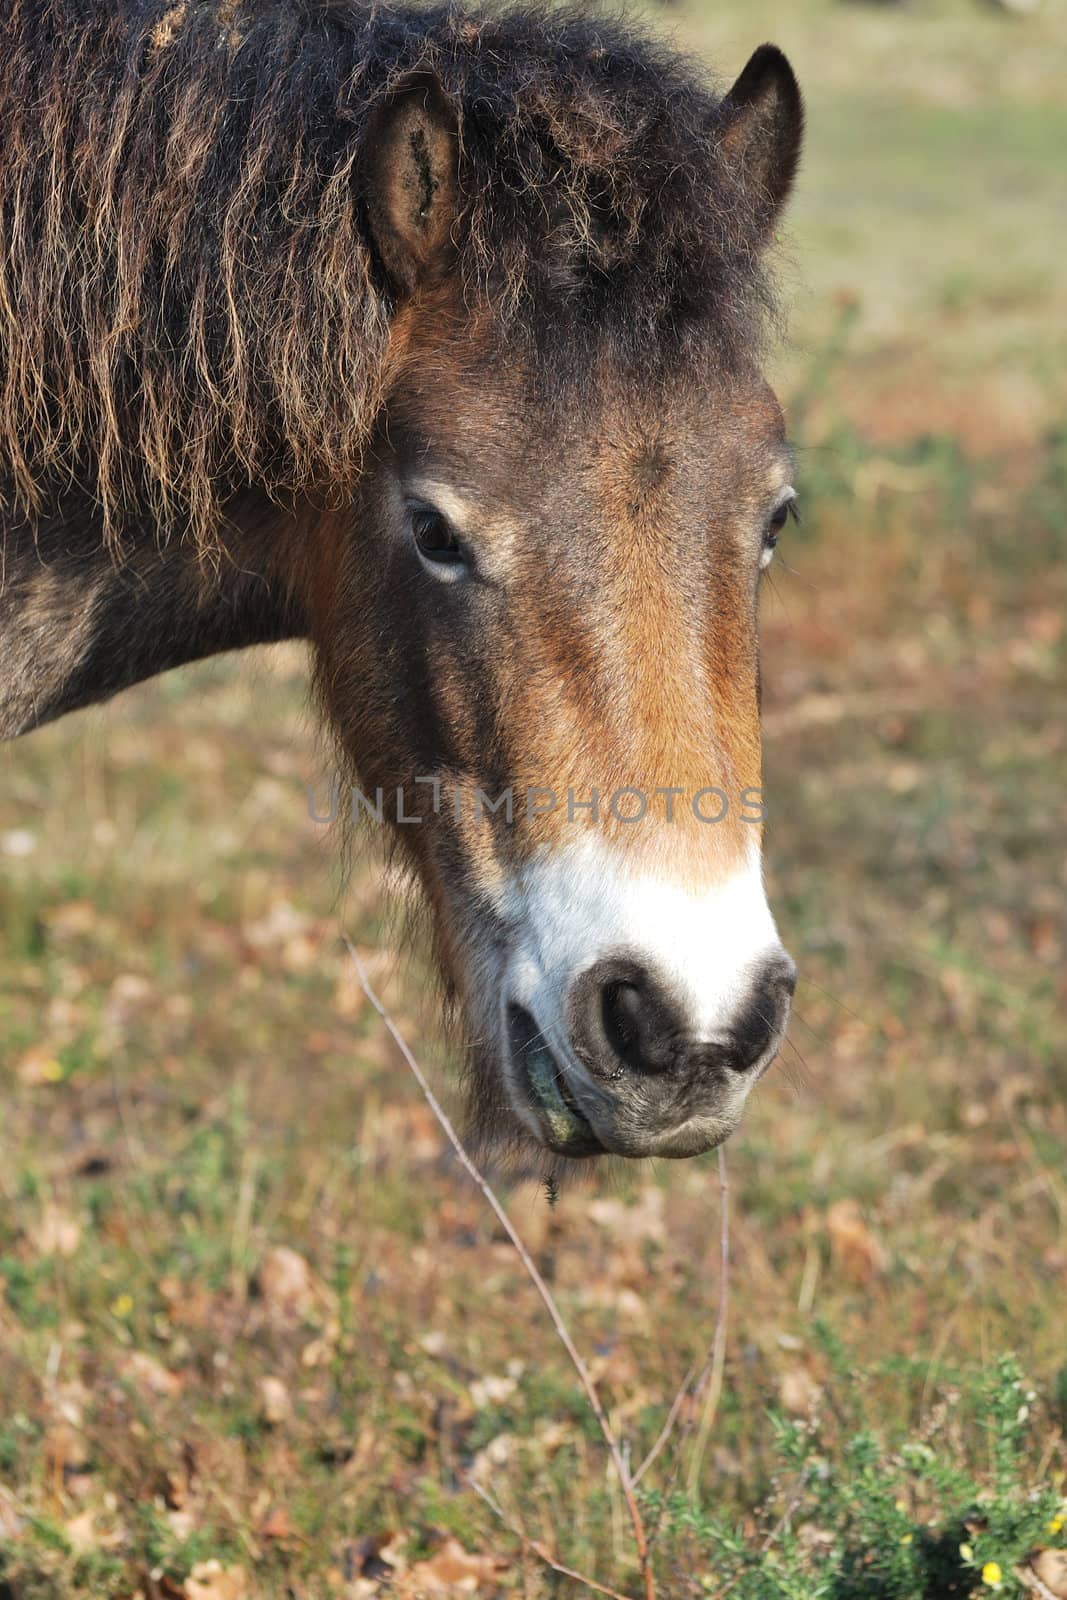 exmoor pony portrait by pauws99